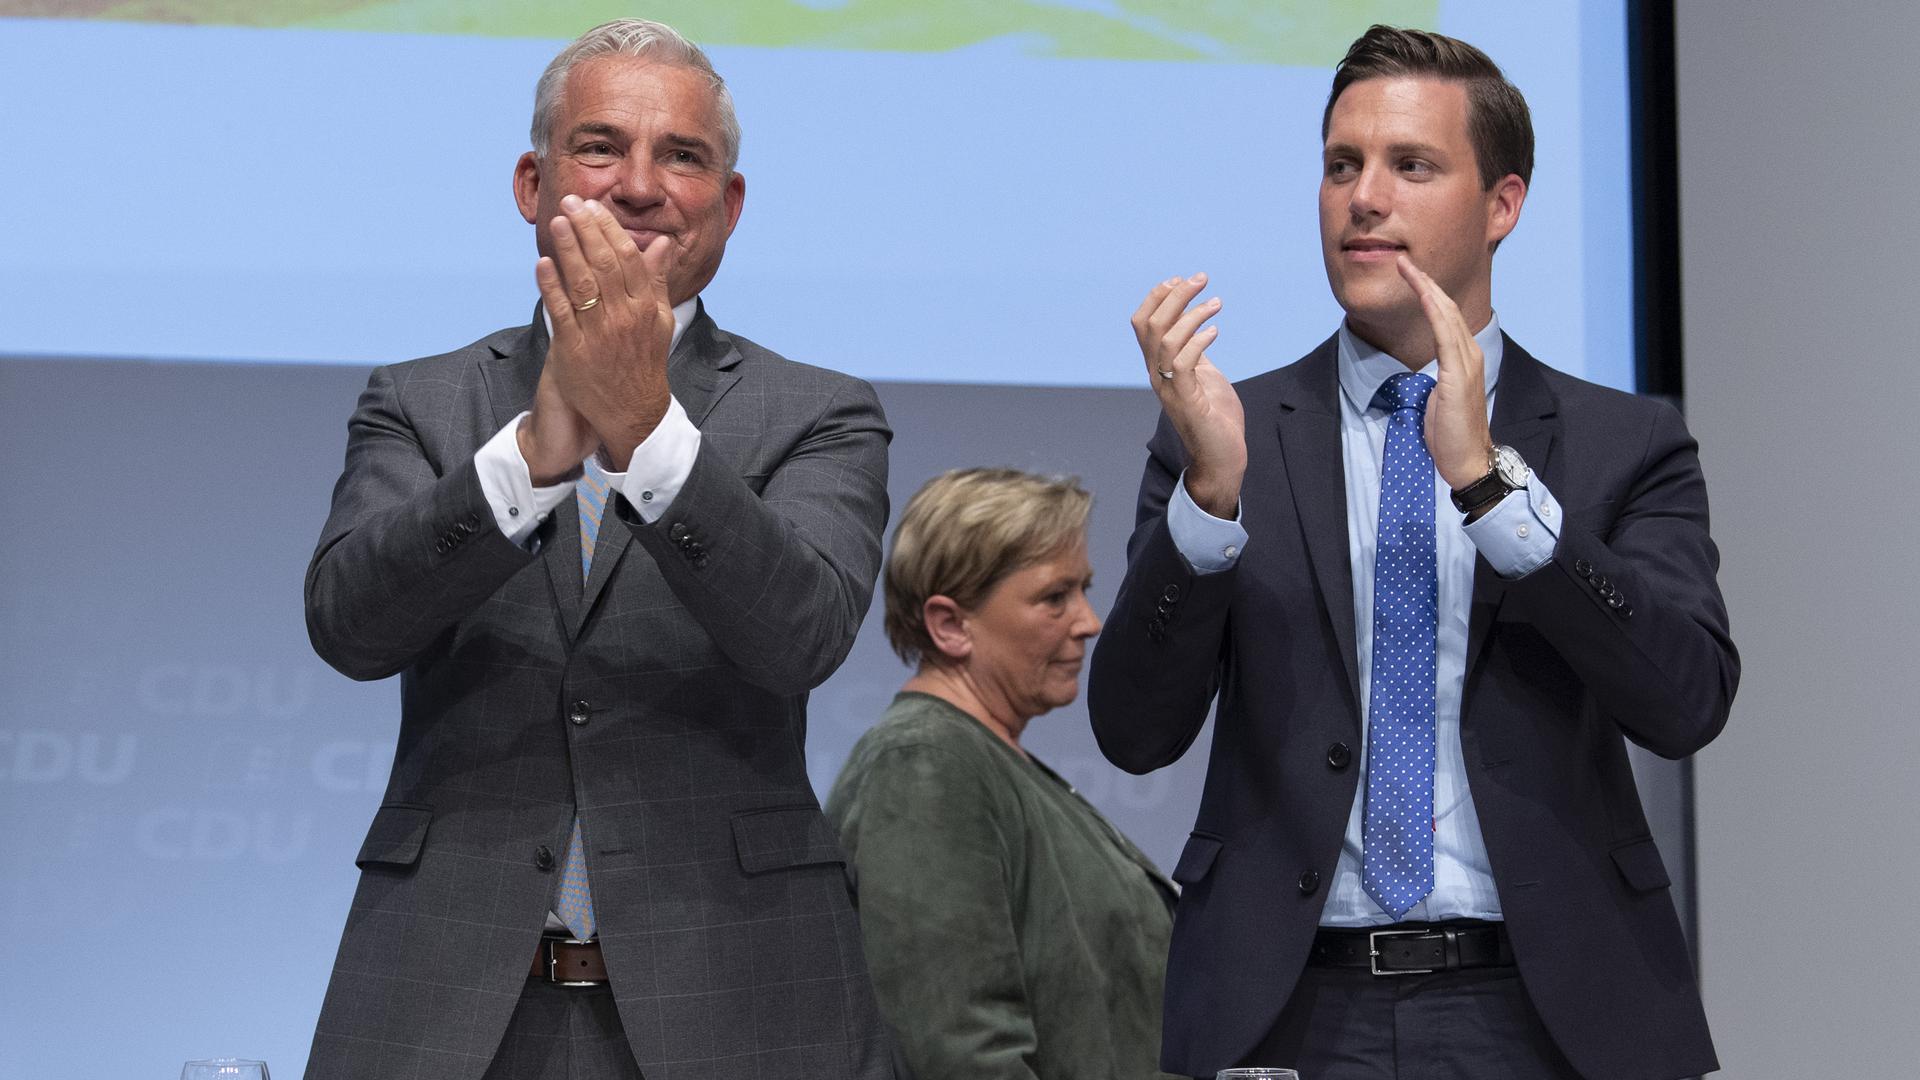 Thomas Strobl (l), Landesvorsitzender der CDU Baden-Württemberg, und Manuel Hagel, Generalsekretär der CDU Baden-Württemberg (r), applaudieren nach der Rede von Baden-Württembergs Kultusministerin Eisenmann auf dem Landesparteitag der CDU Baden-Württemberg. Eisenmann wurde als Spitzenkandidatin für die Landtagswahl 2021 gewählt. +++ dpa-Bildfunk +++